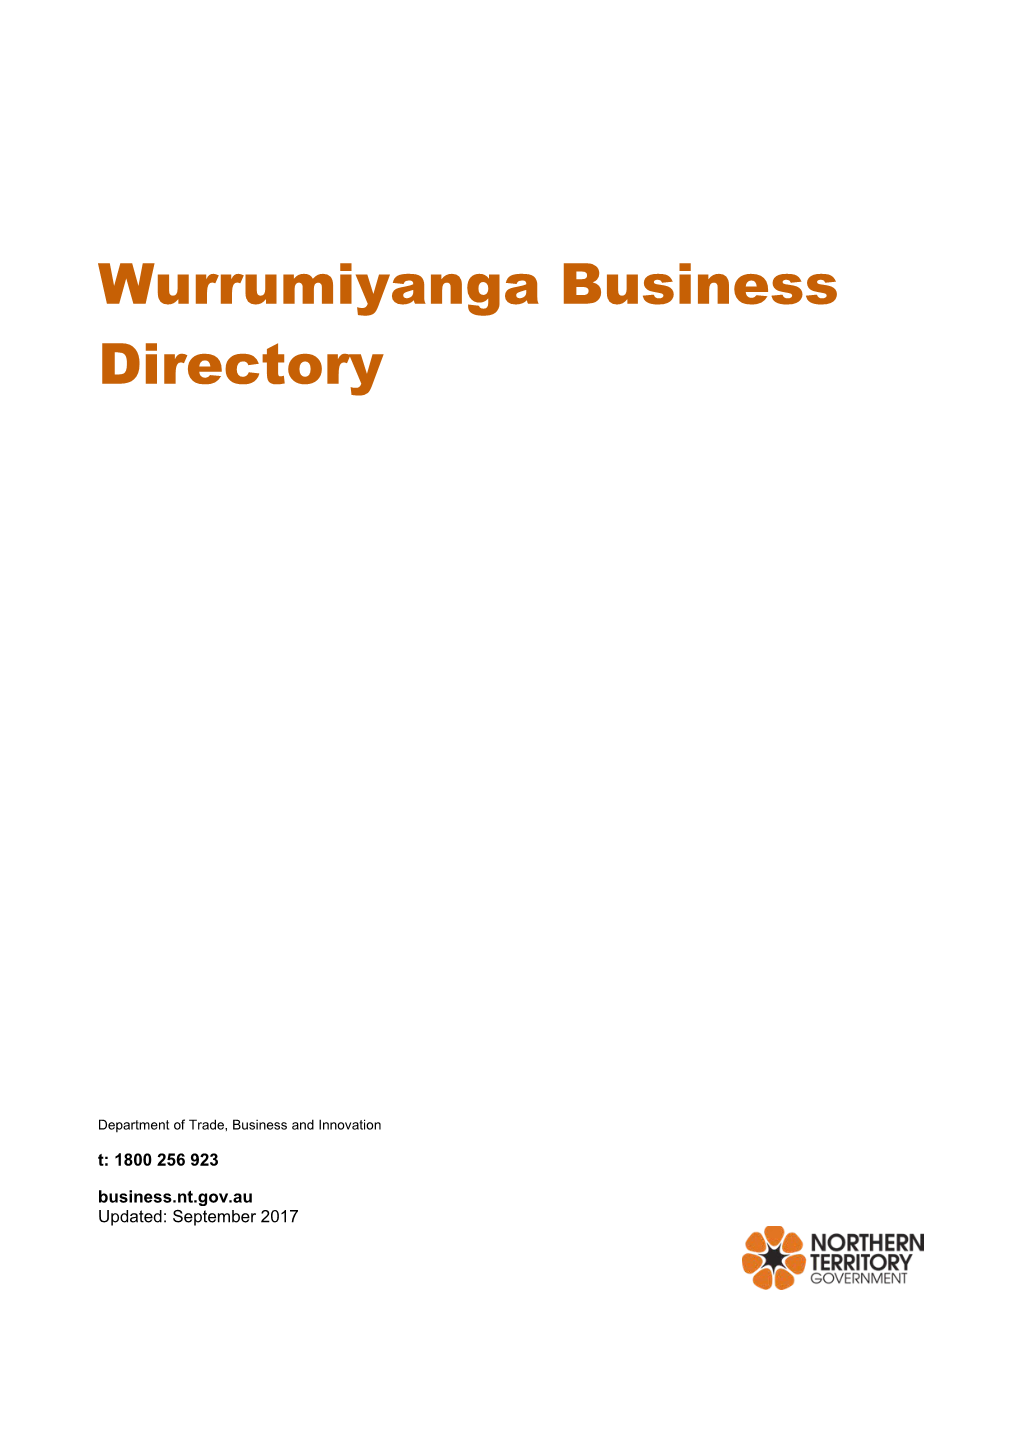 Wurrumiyanga Business Directory